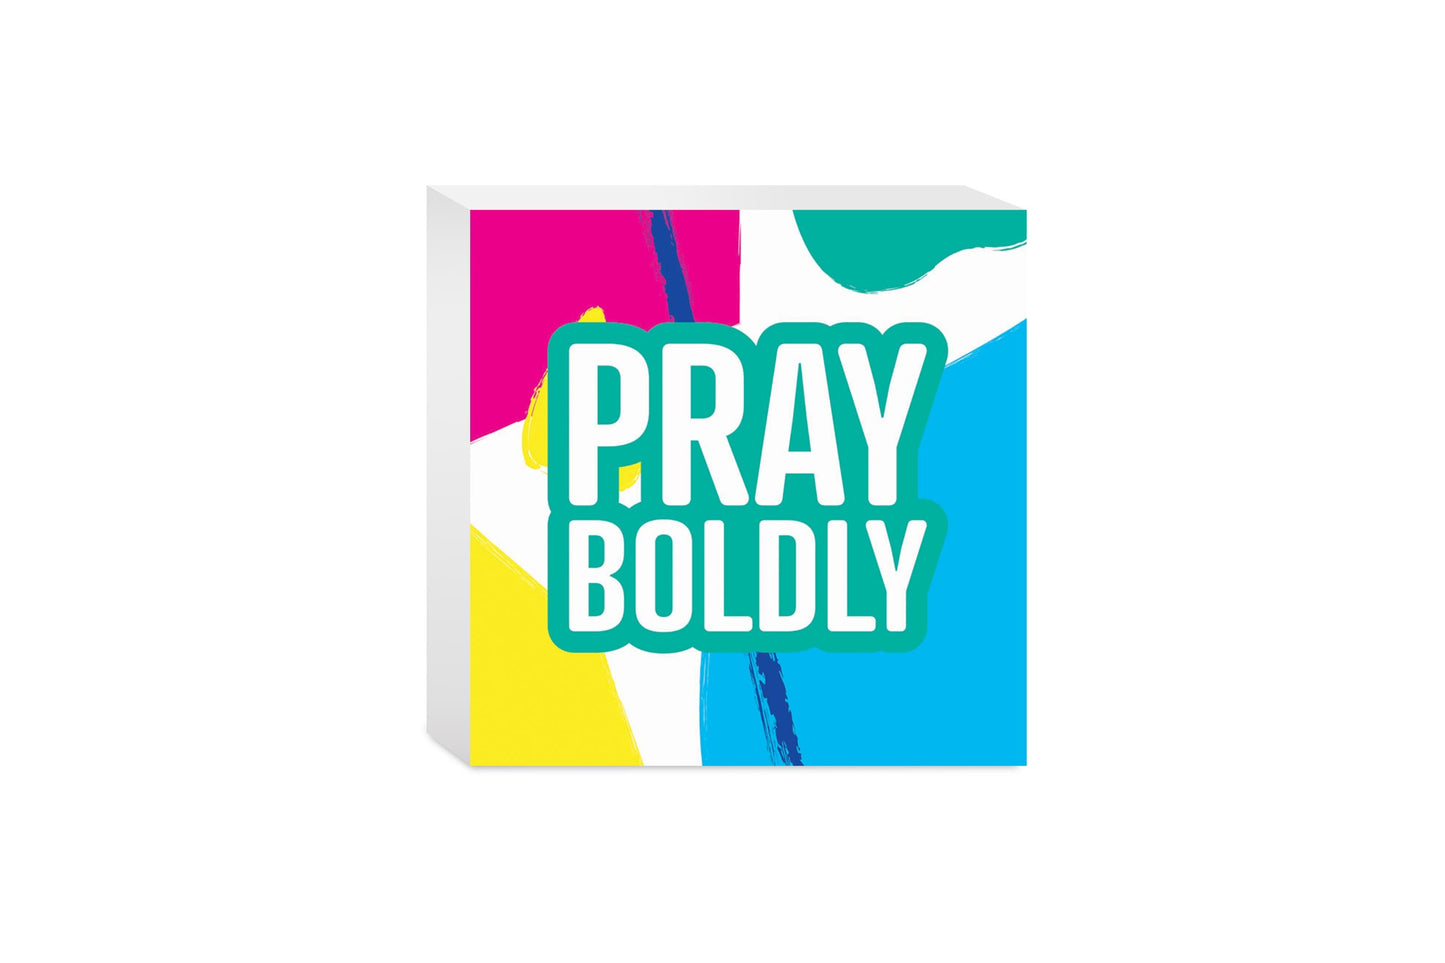 Pray Boldly Bright Pattern | 5x5